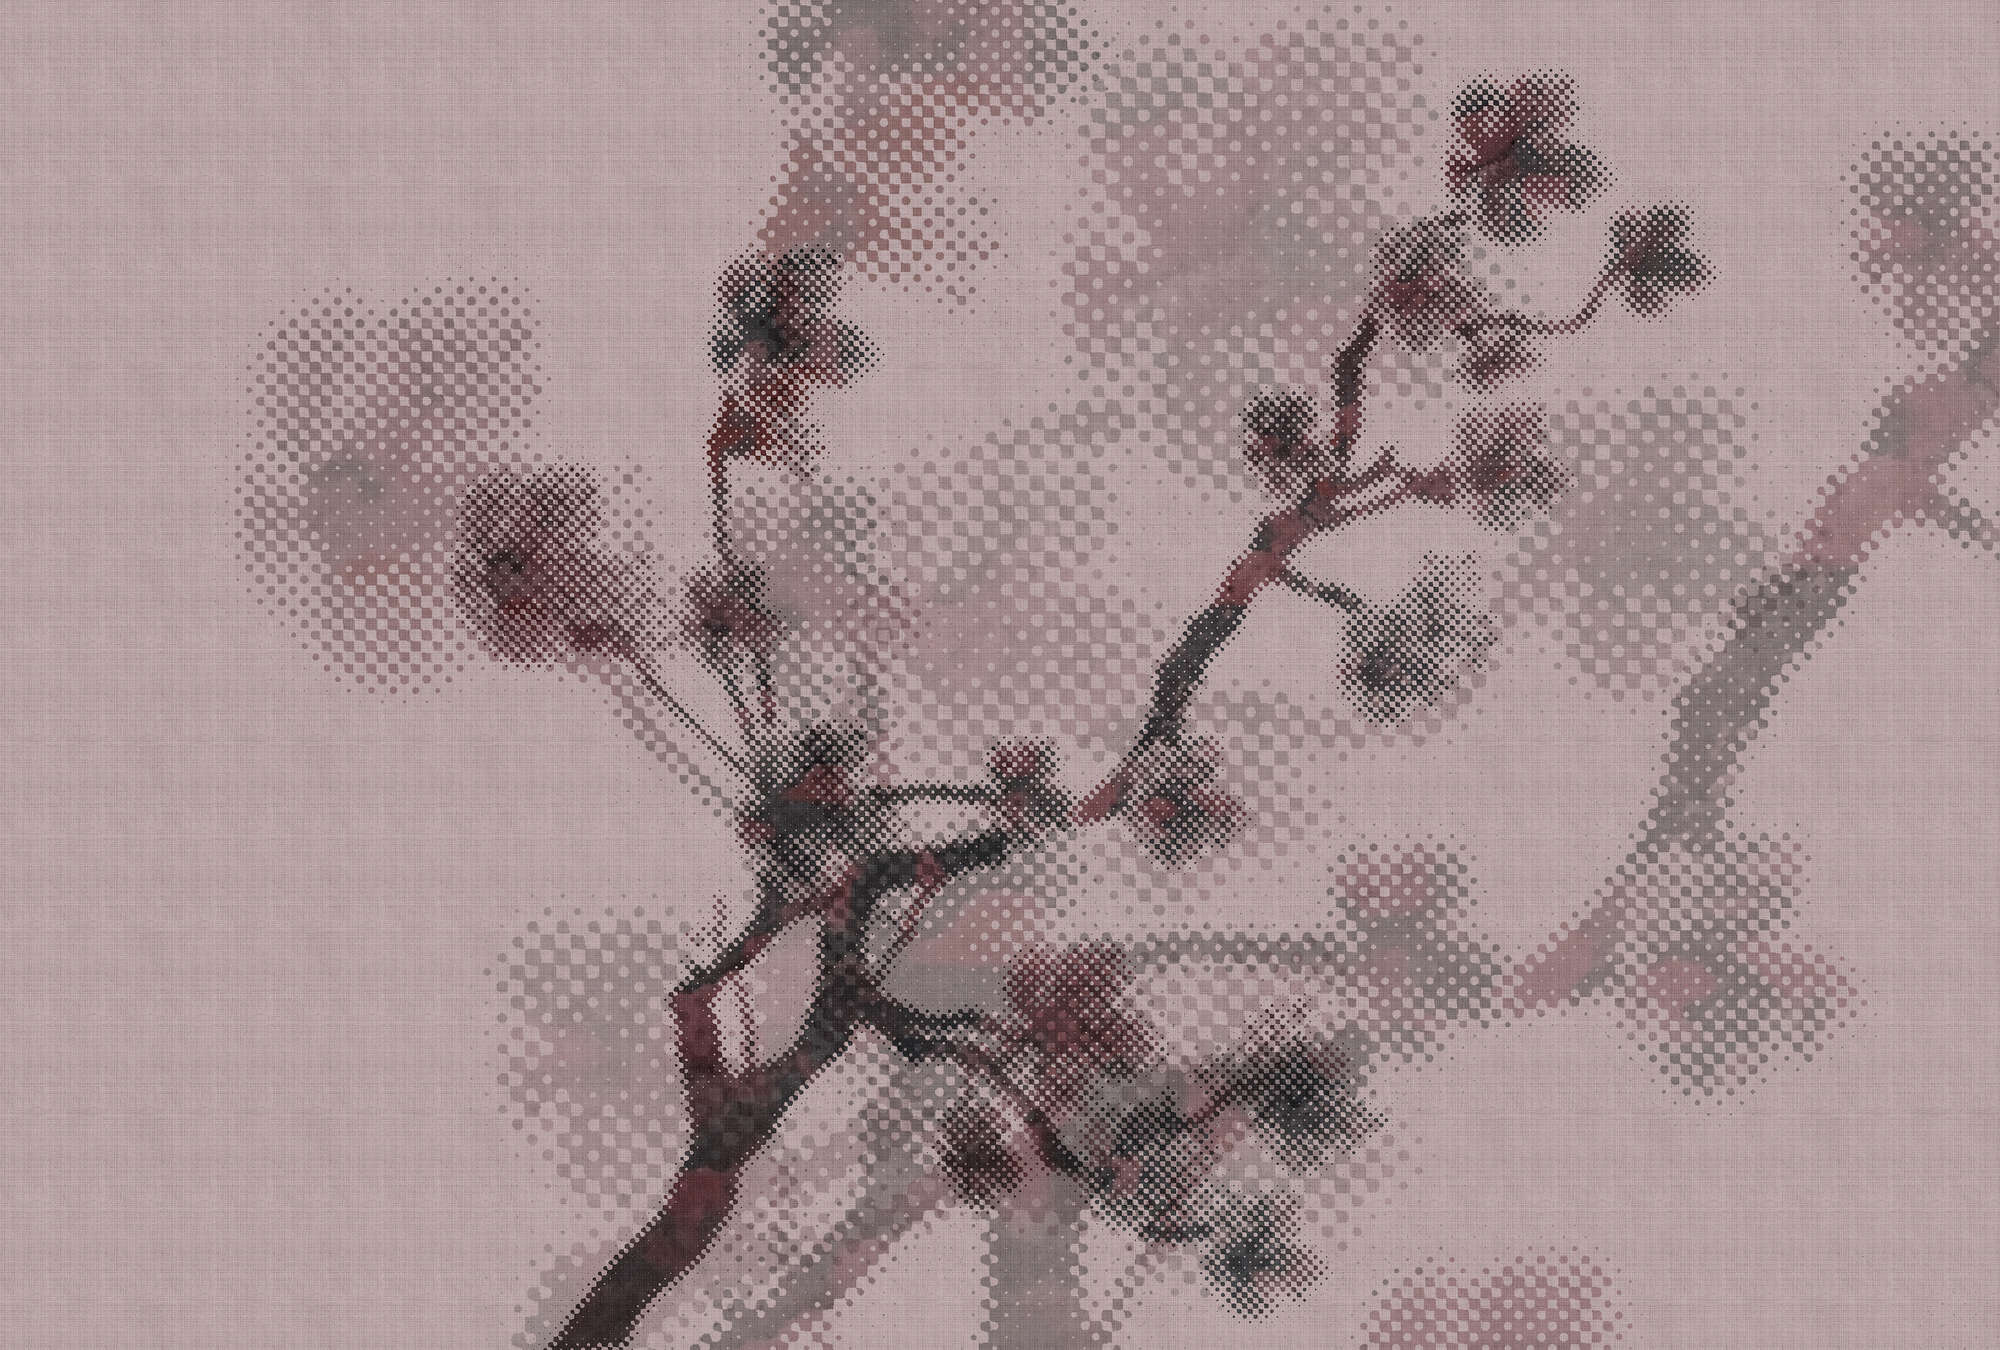             Twigs 3 - Digital behang met natuurmotief & pixeldesign - natuurlijke linnenstructuur - roze | structuurvlies
        